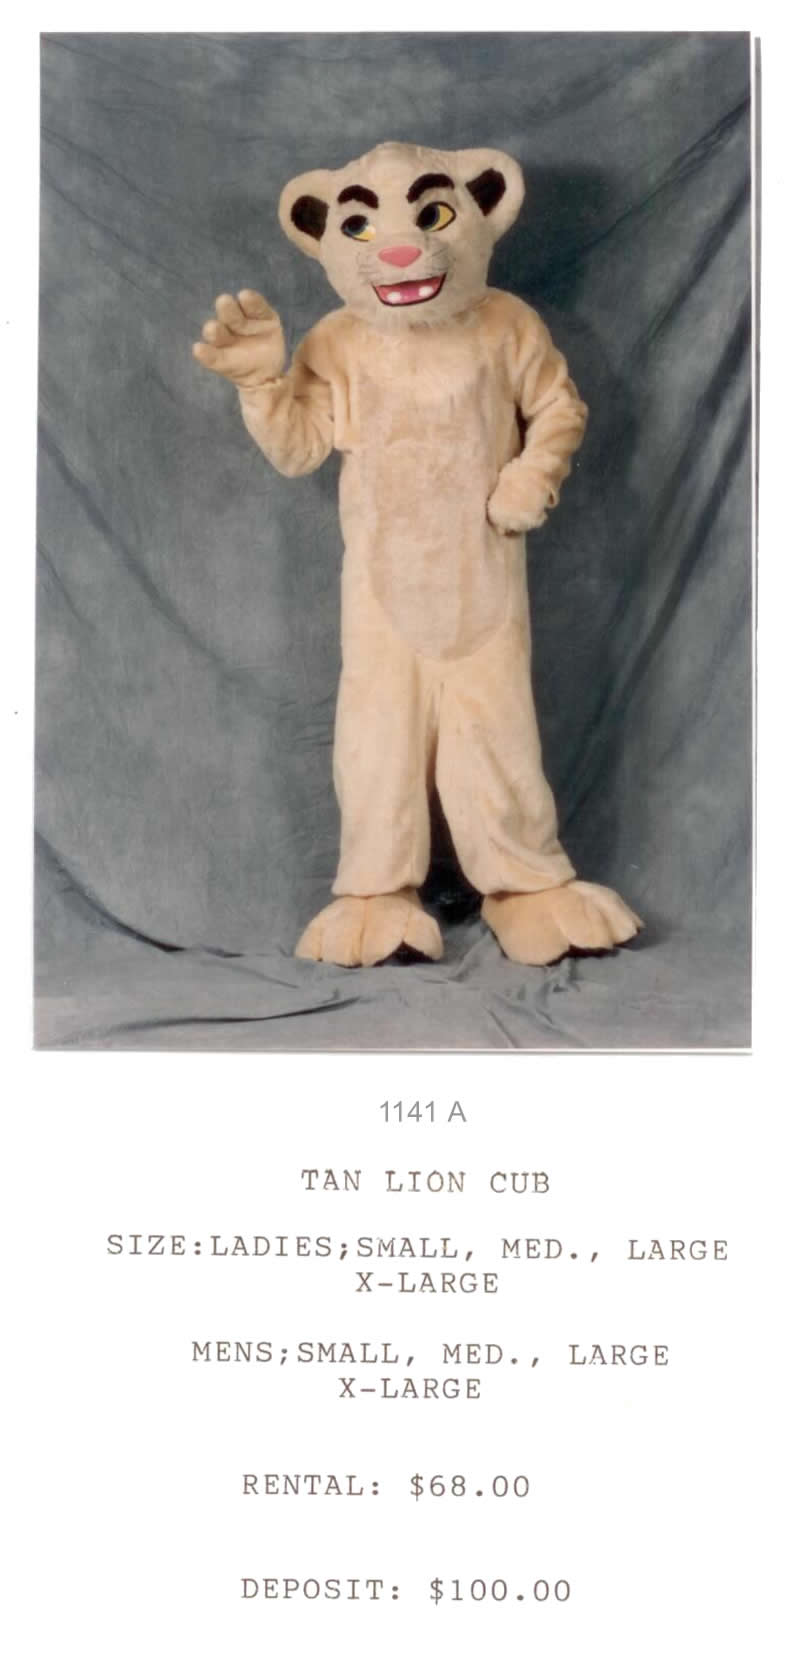 TAN LION CUB